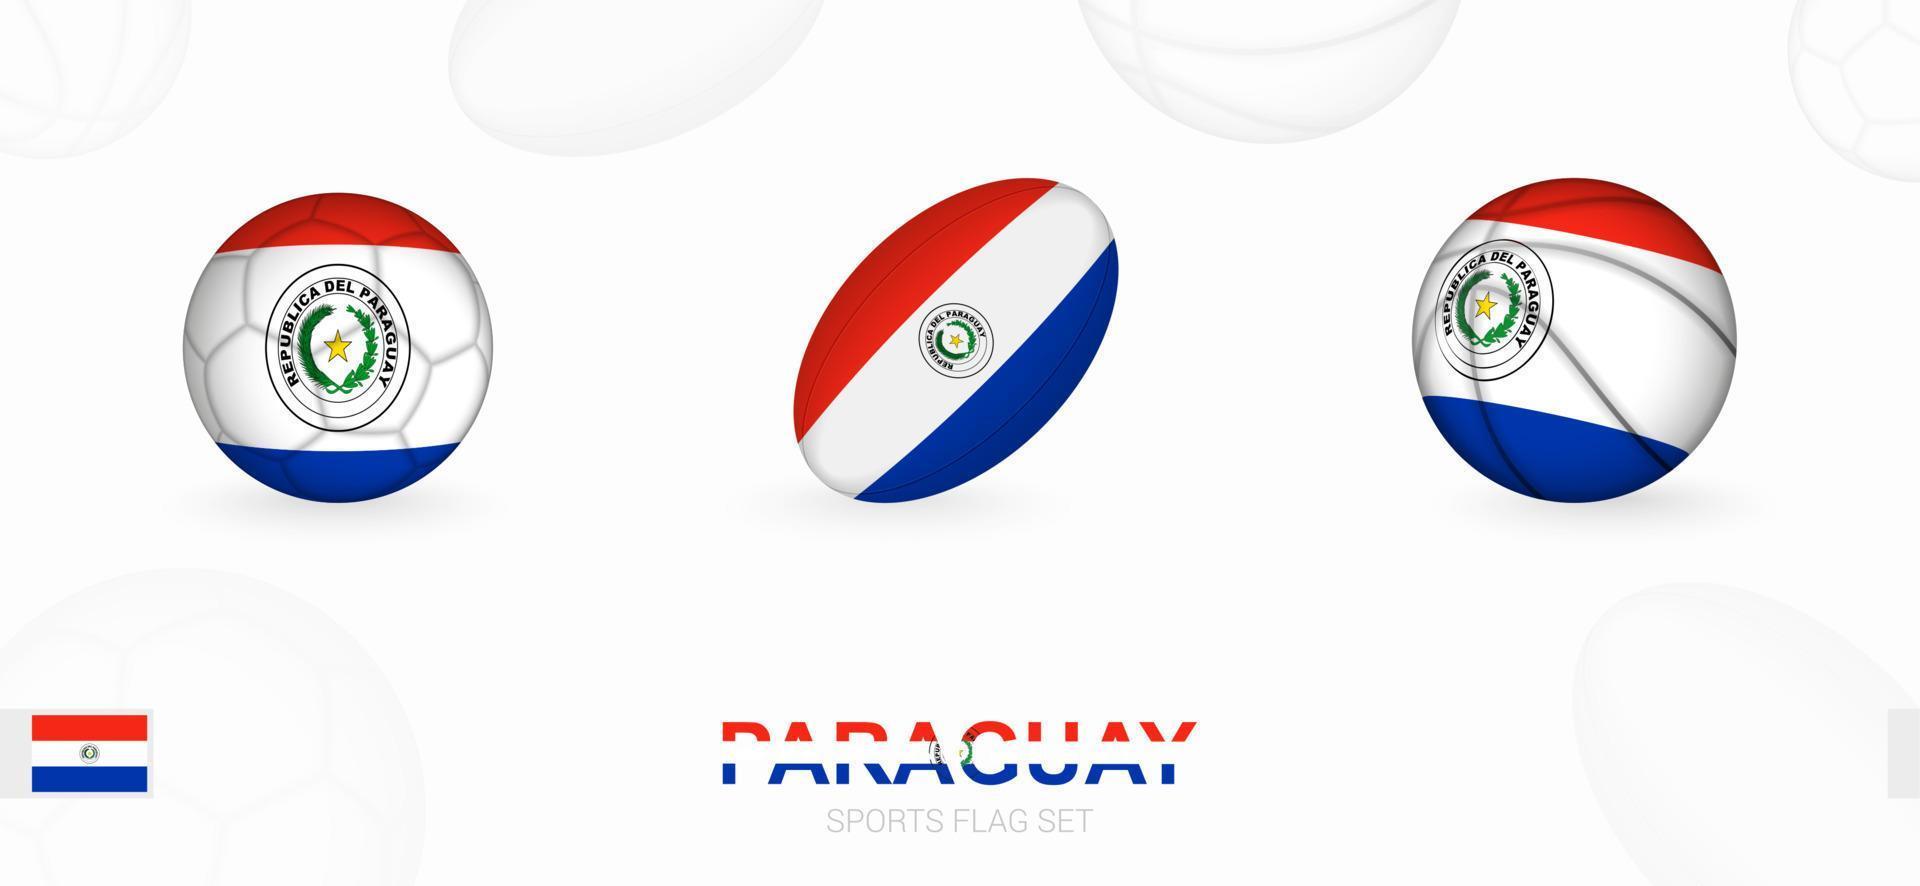 des sports Icônes pour football, le rugby et basketball avec le drapeau de paraguay. vecteur